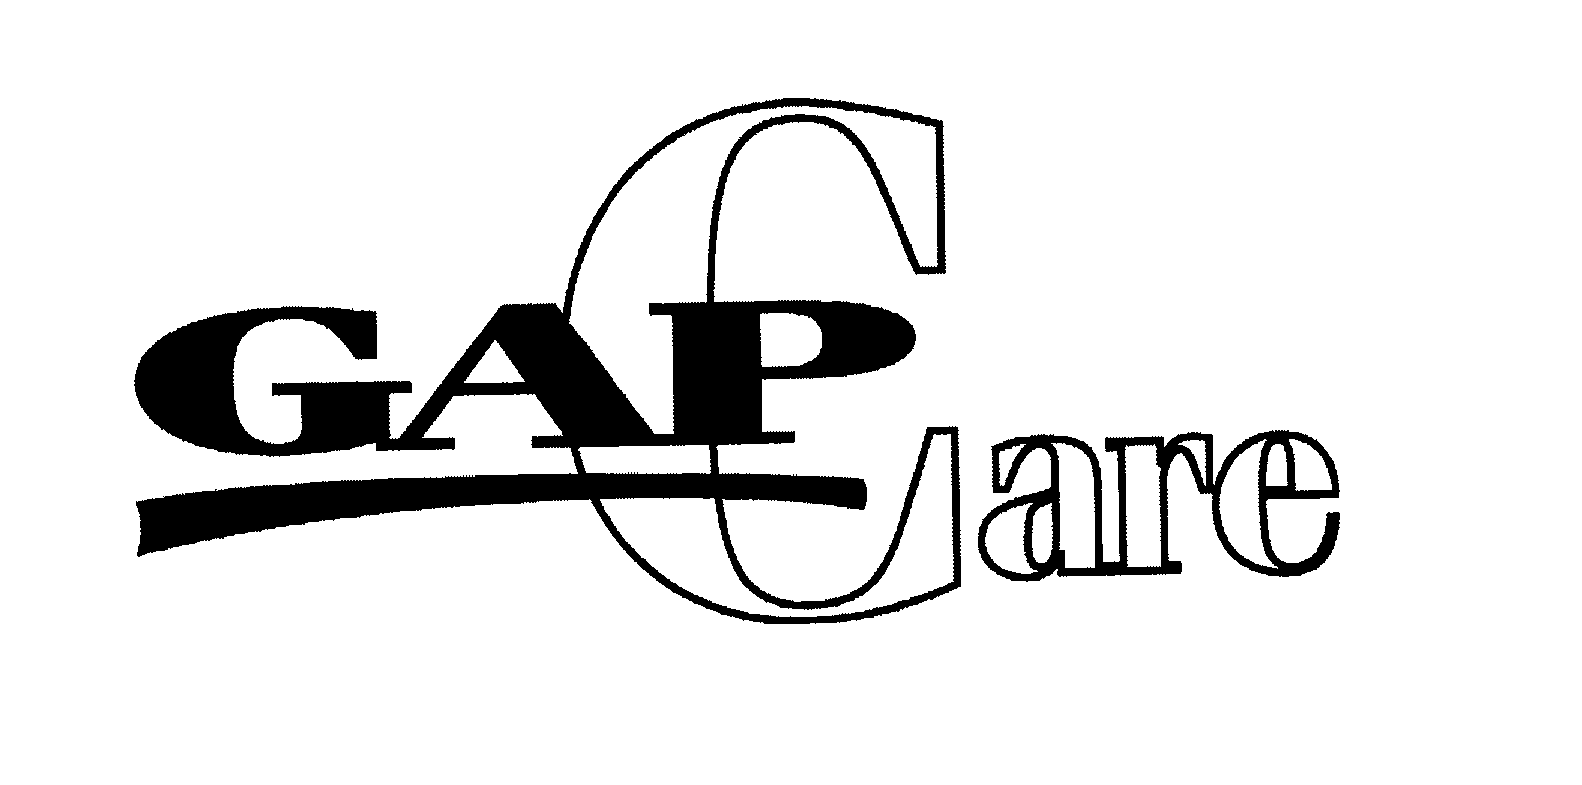 Trademark Logo GAPCARE